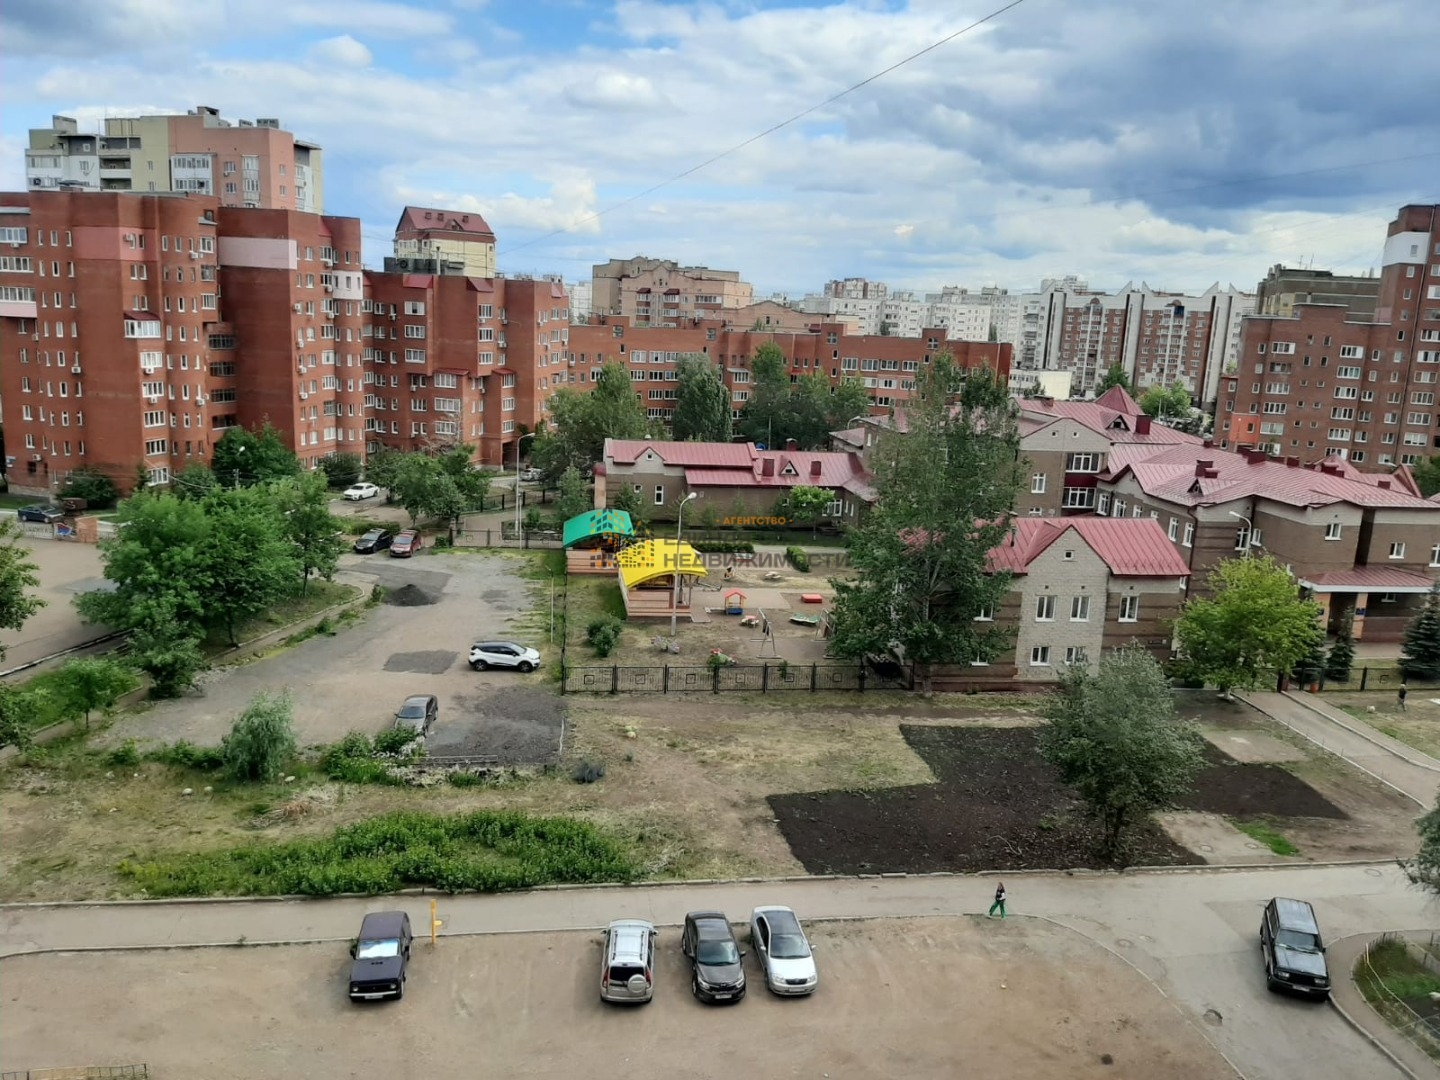 Сдается 2 х комнатная квартира в Октябрьском районе города Уфы в микрорайоне Сипайлово